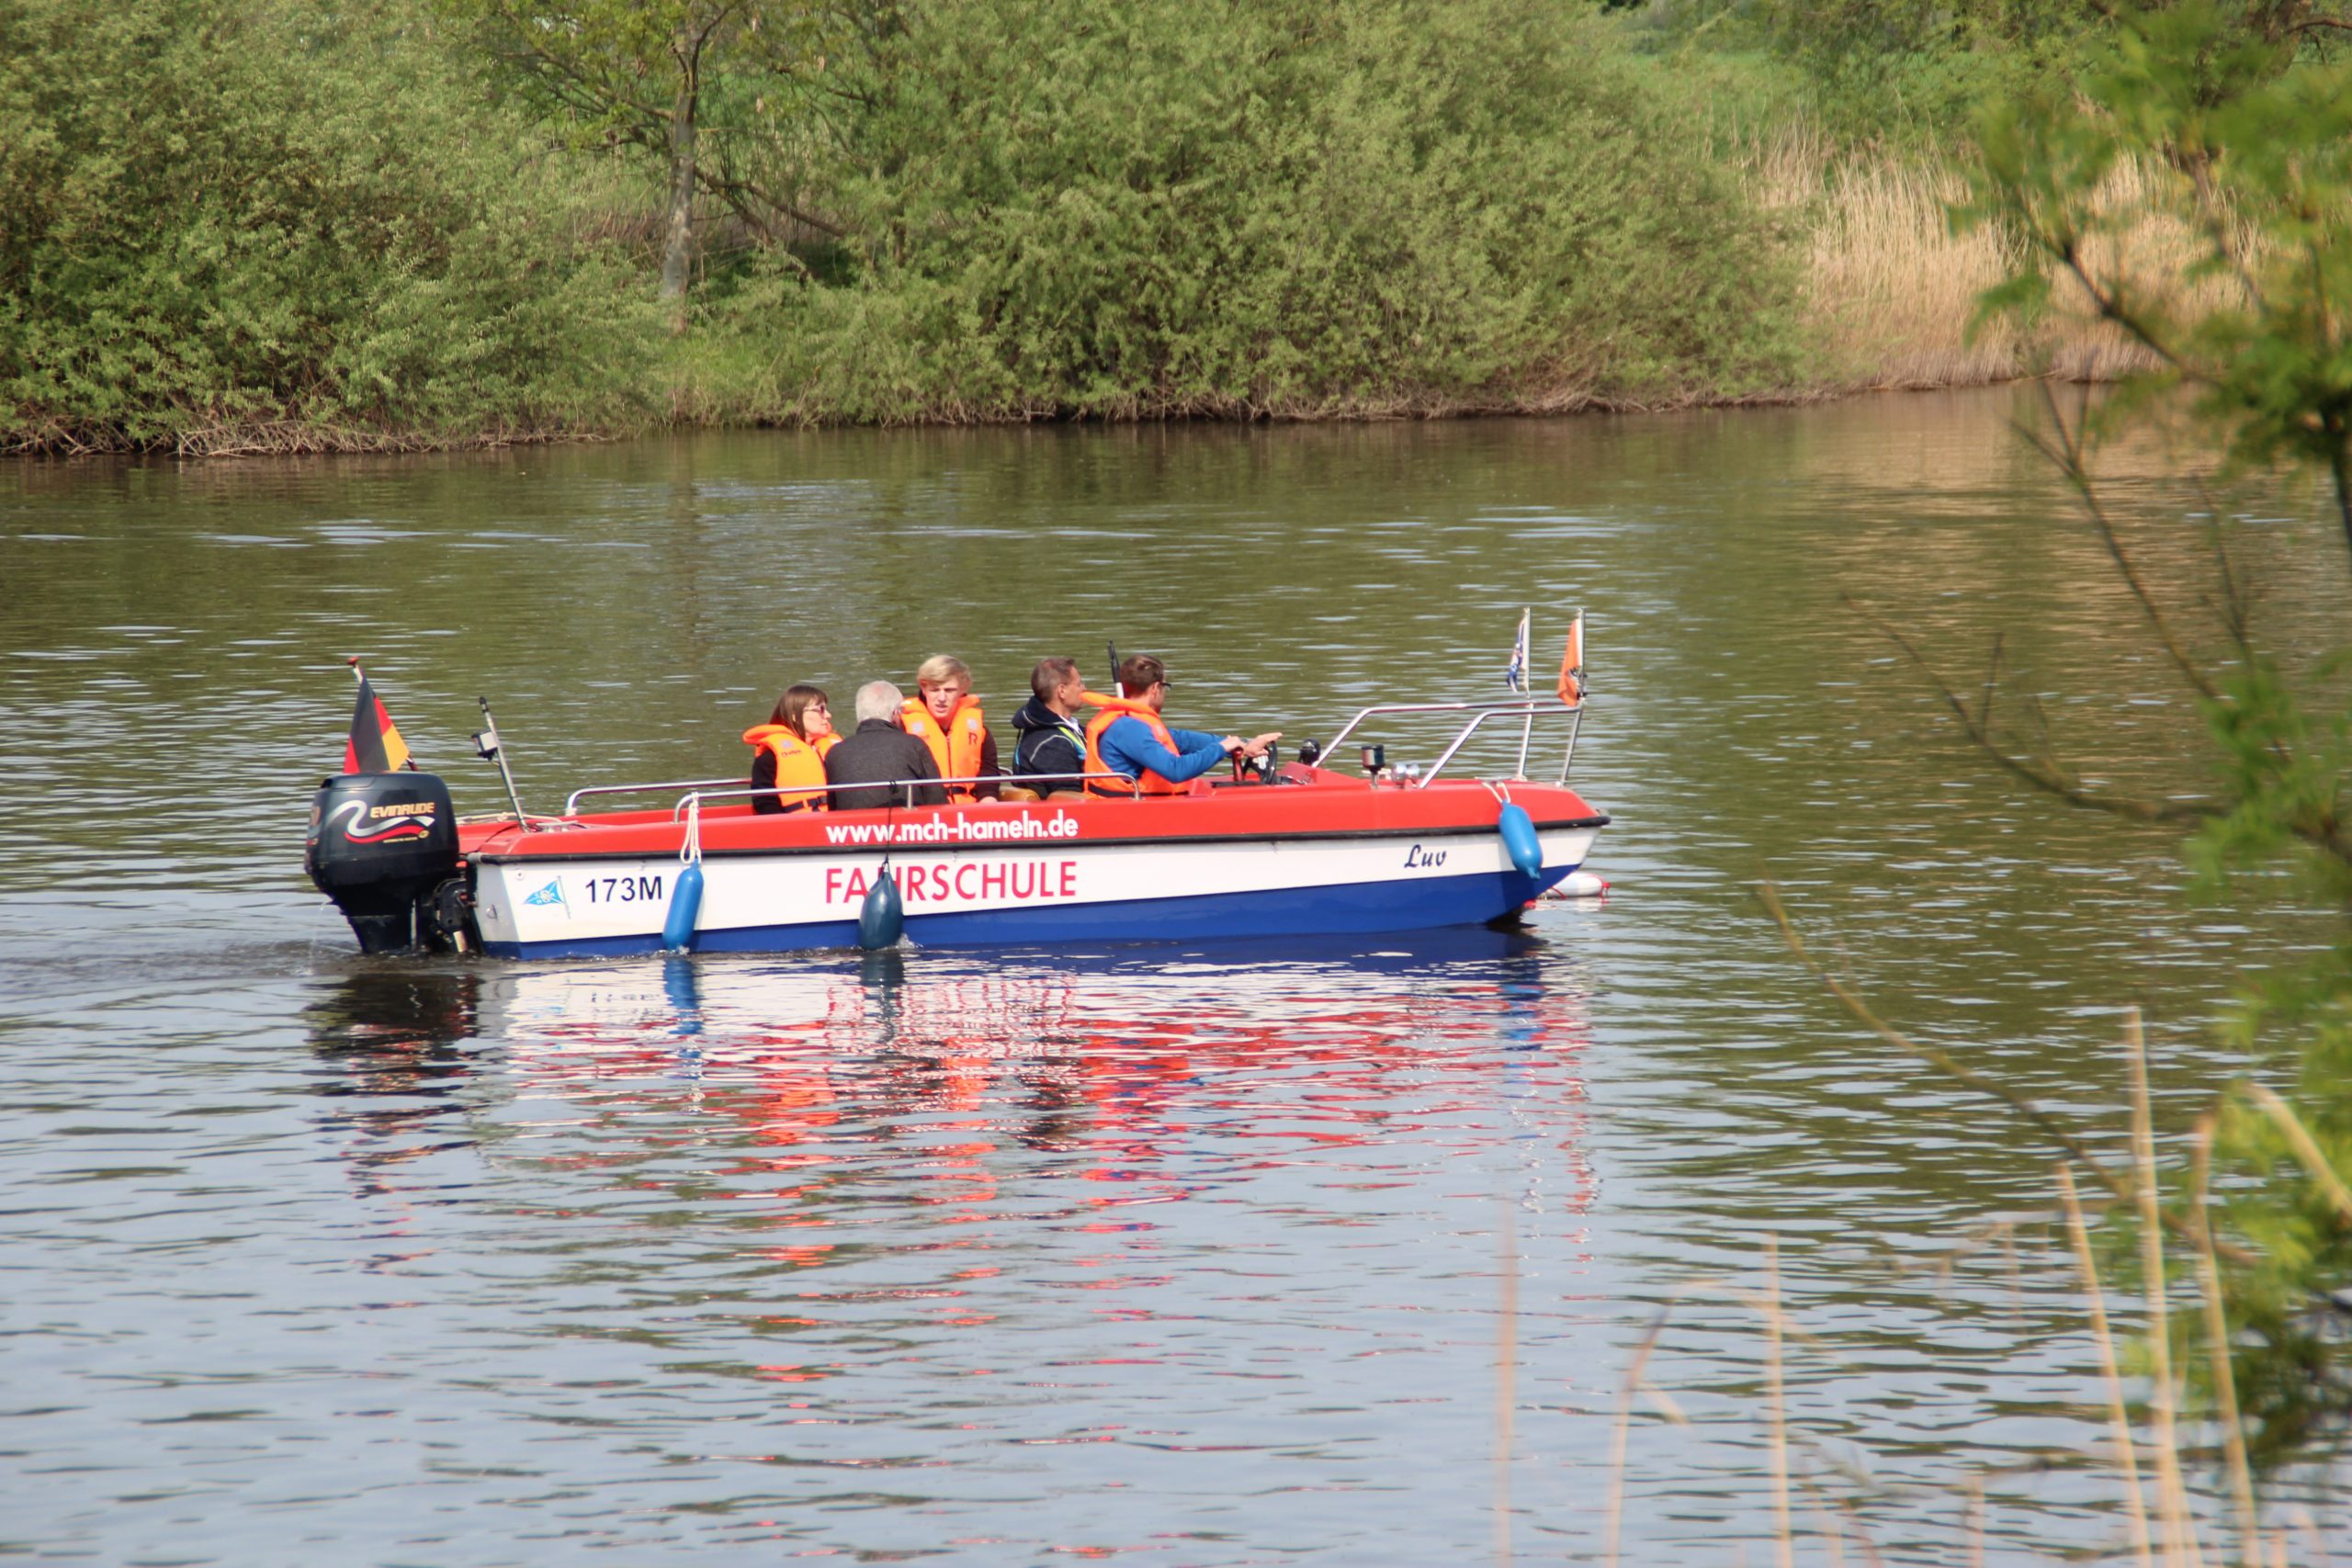 Ein rot-weiß-blaues Boot fährt auf dem Wasser; die Insassen tragen orangene Rettungswesten.